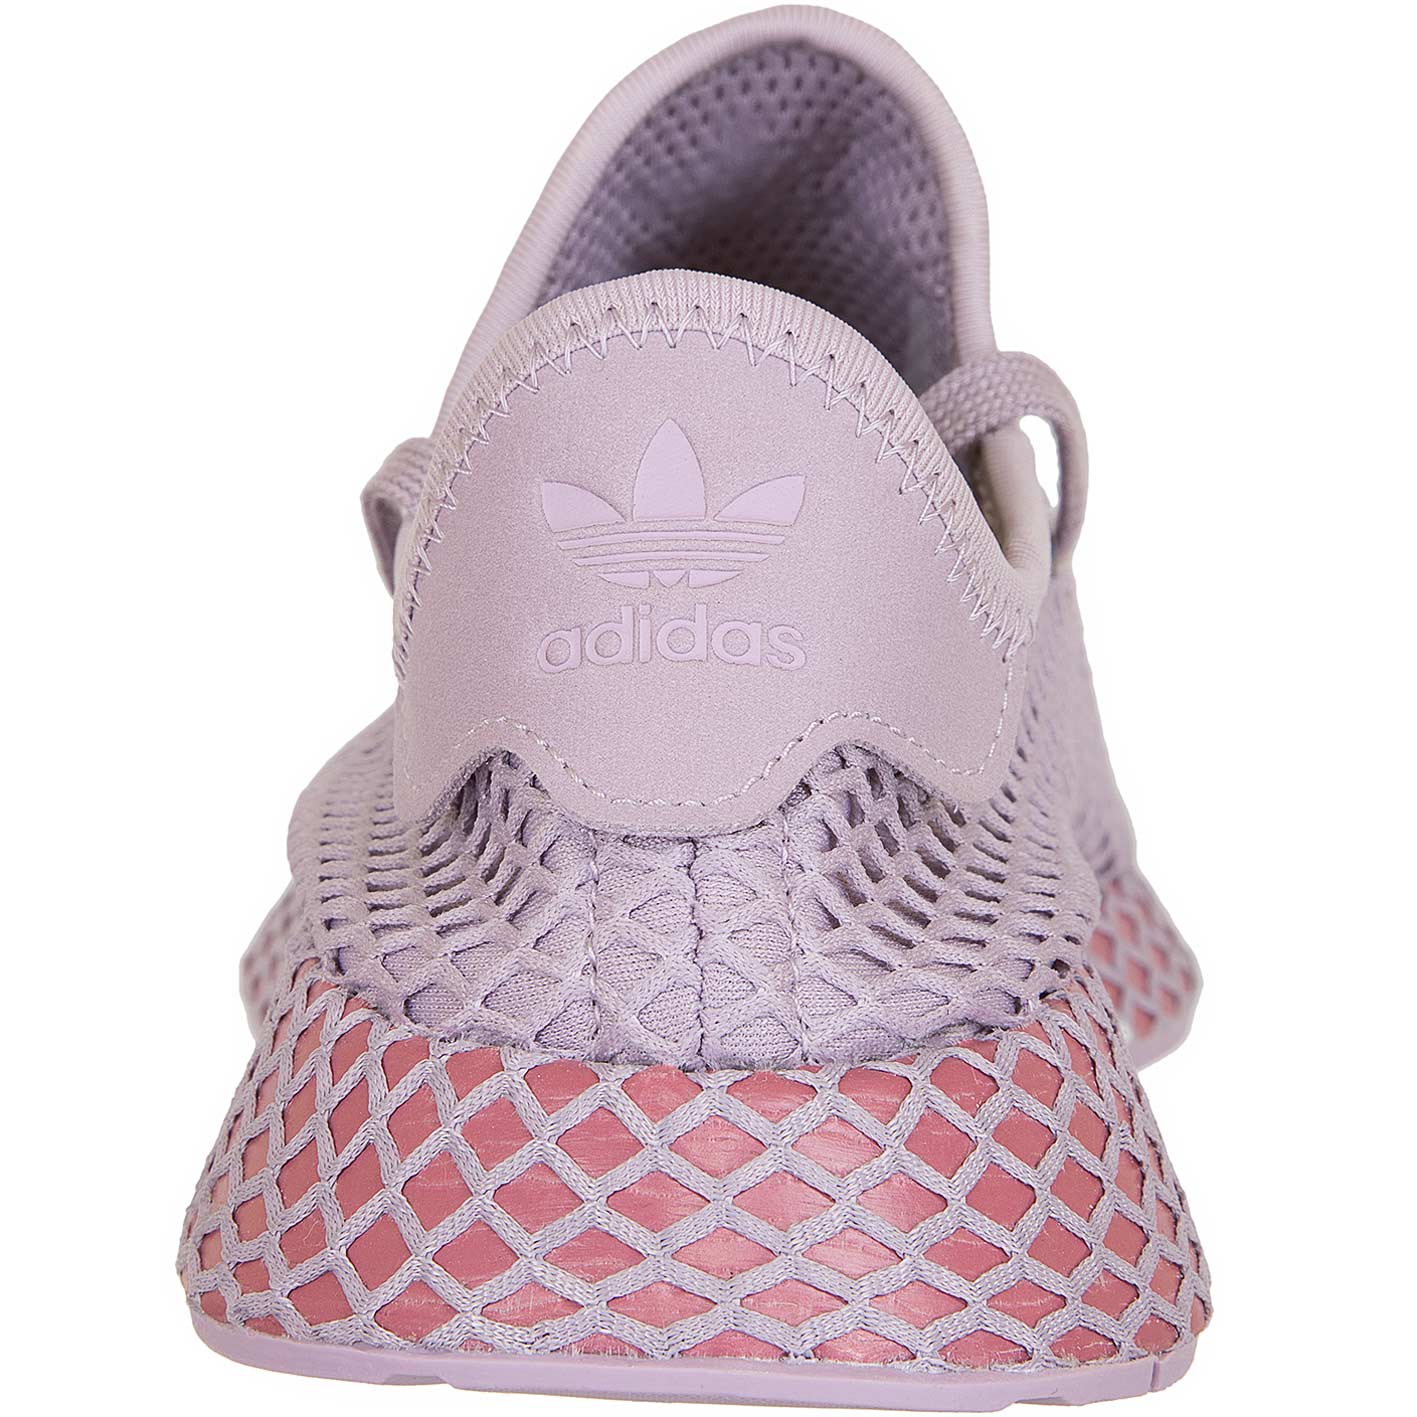 Ham Een hekel hebben aan Inactief ☆ Adidas Originals Damen Sneaker Deerupt Runner lila - hier bestellen!